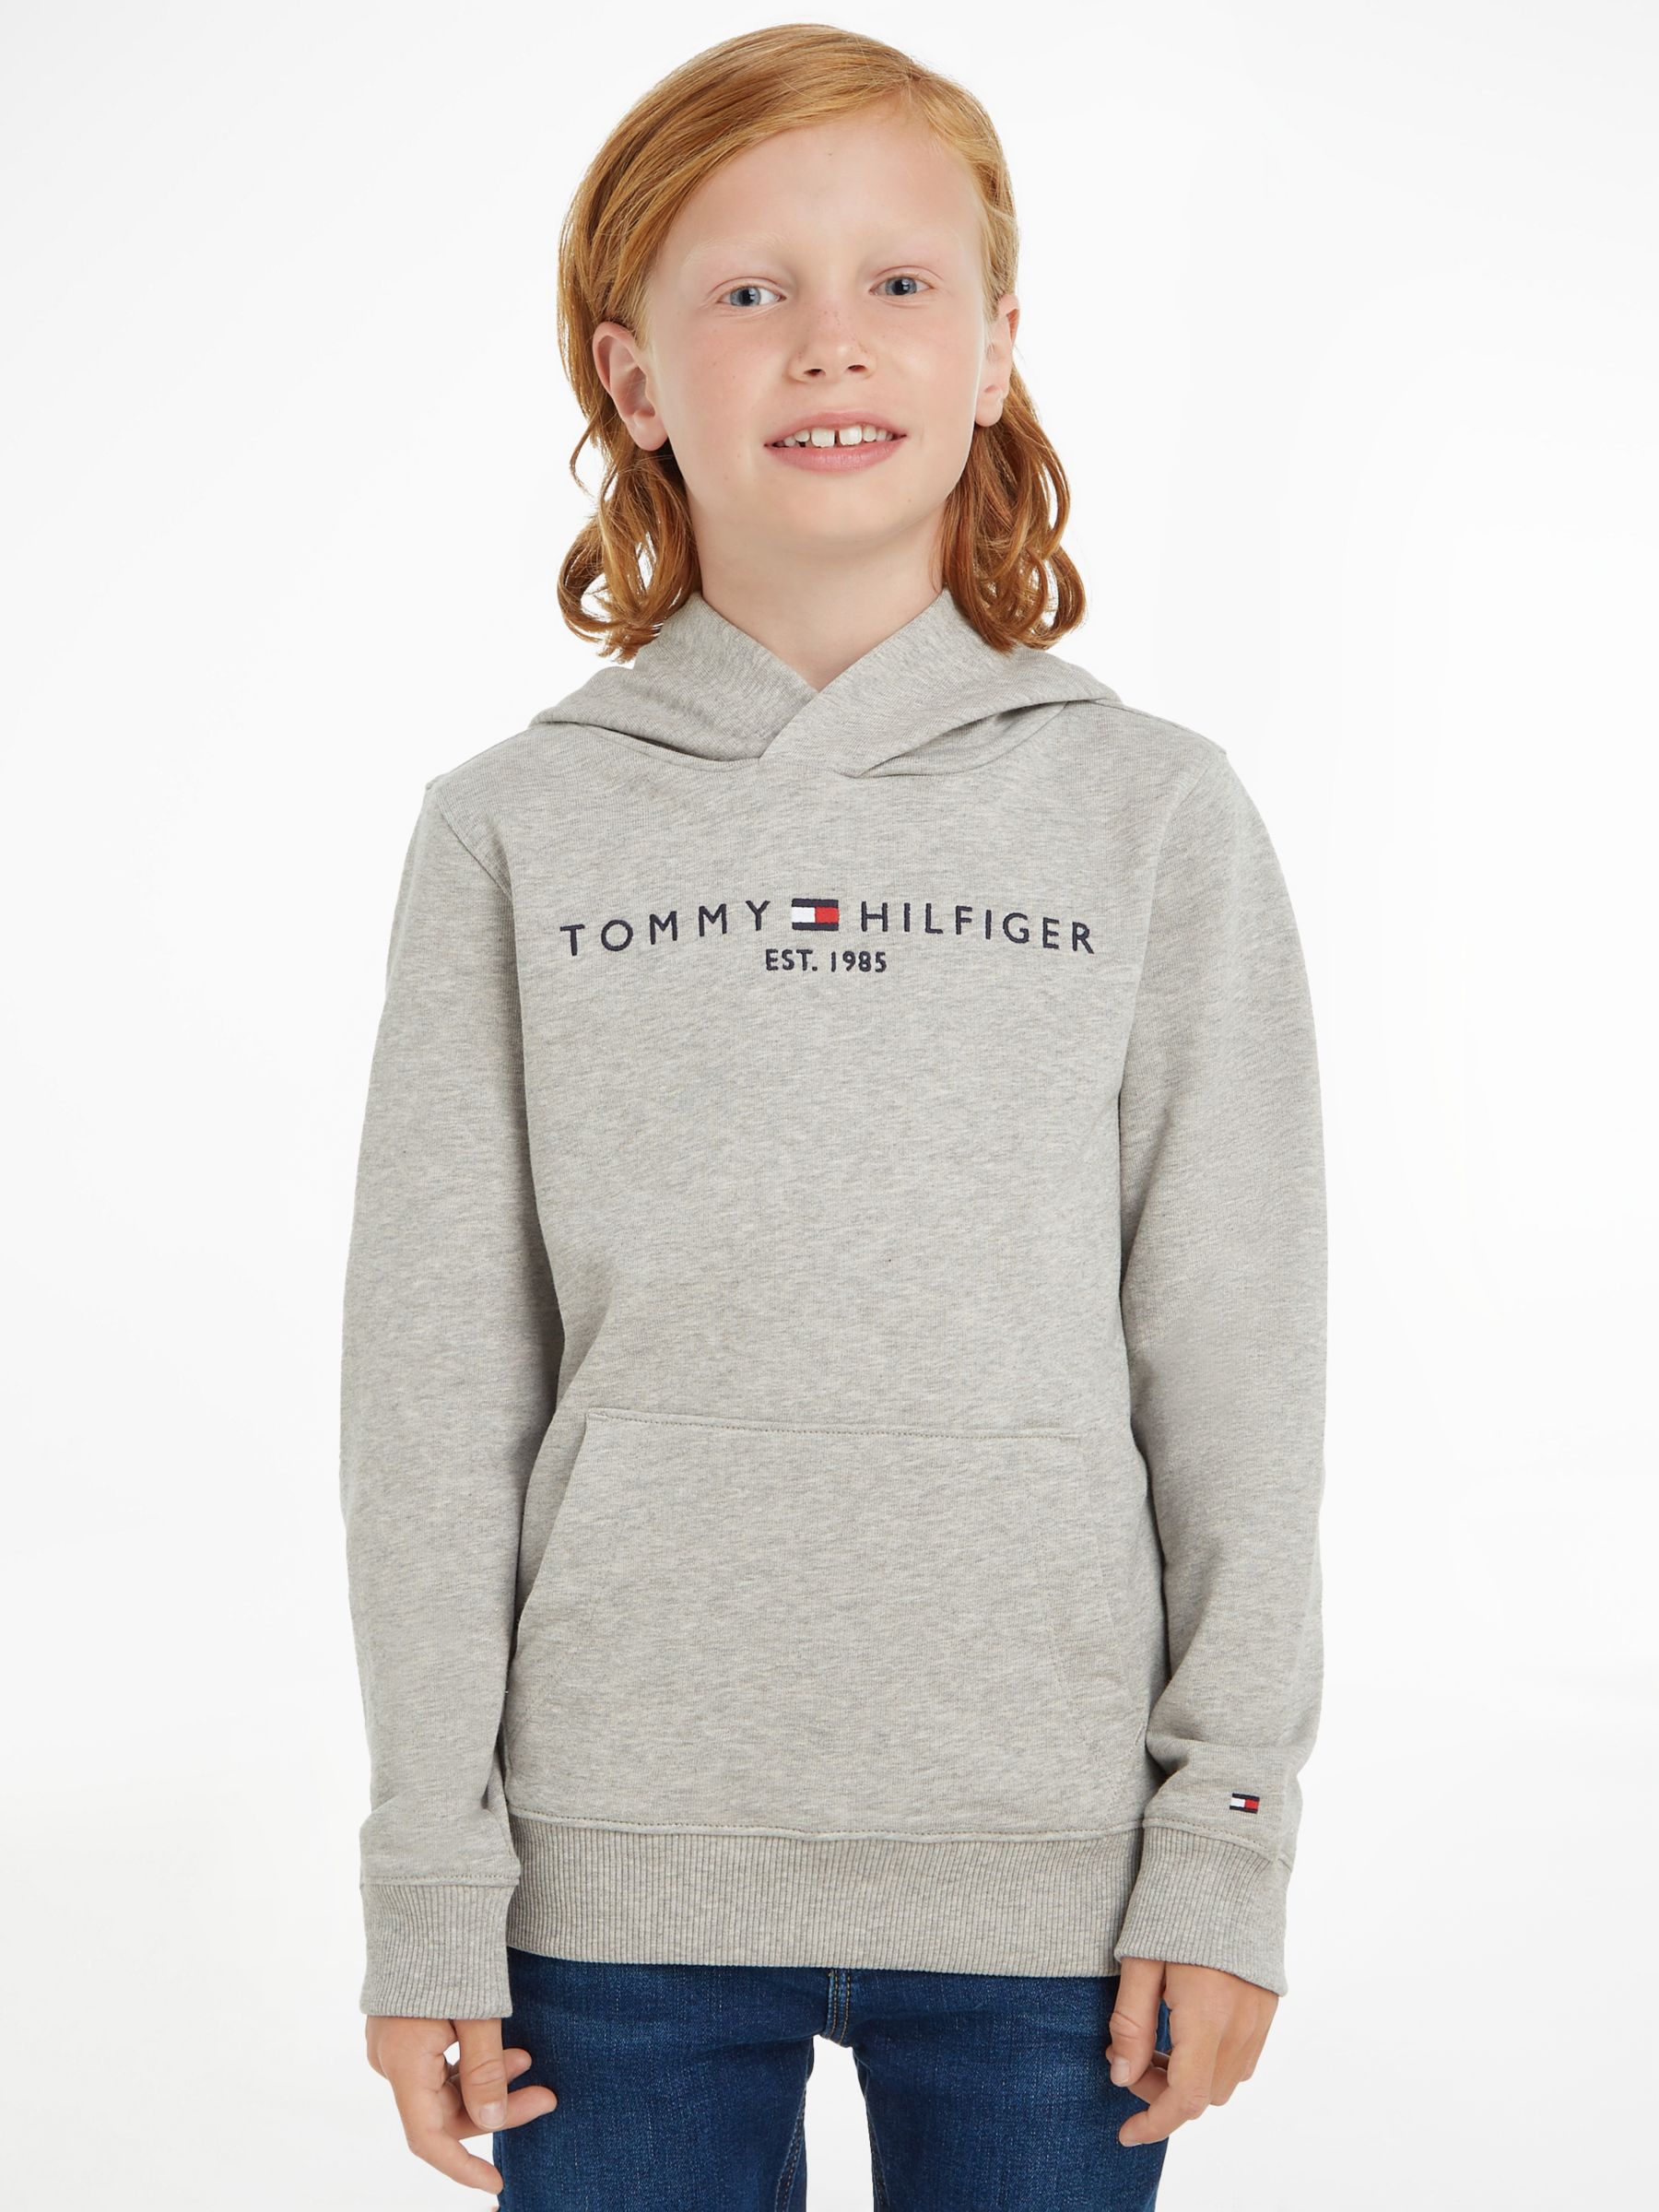 Детский пуловер с капюшоном Essential Tommy Hilfiger, светло-серый вереск